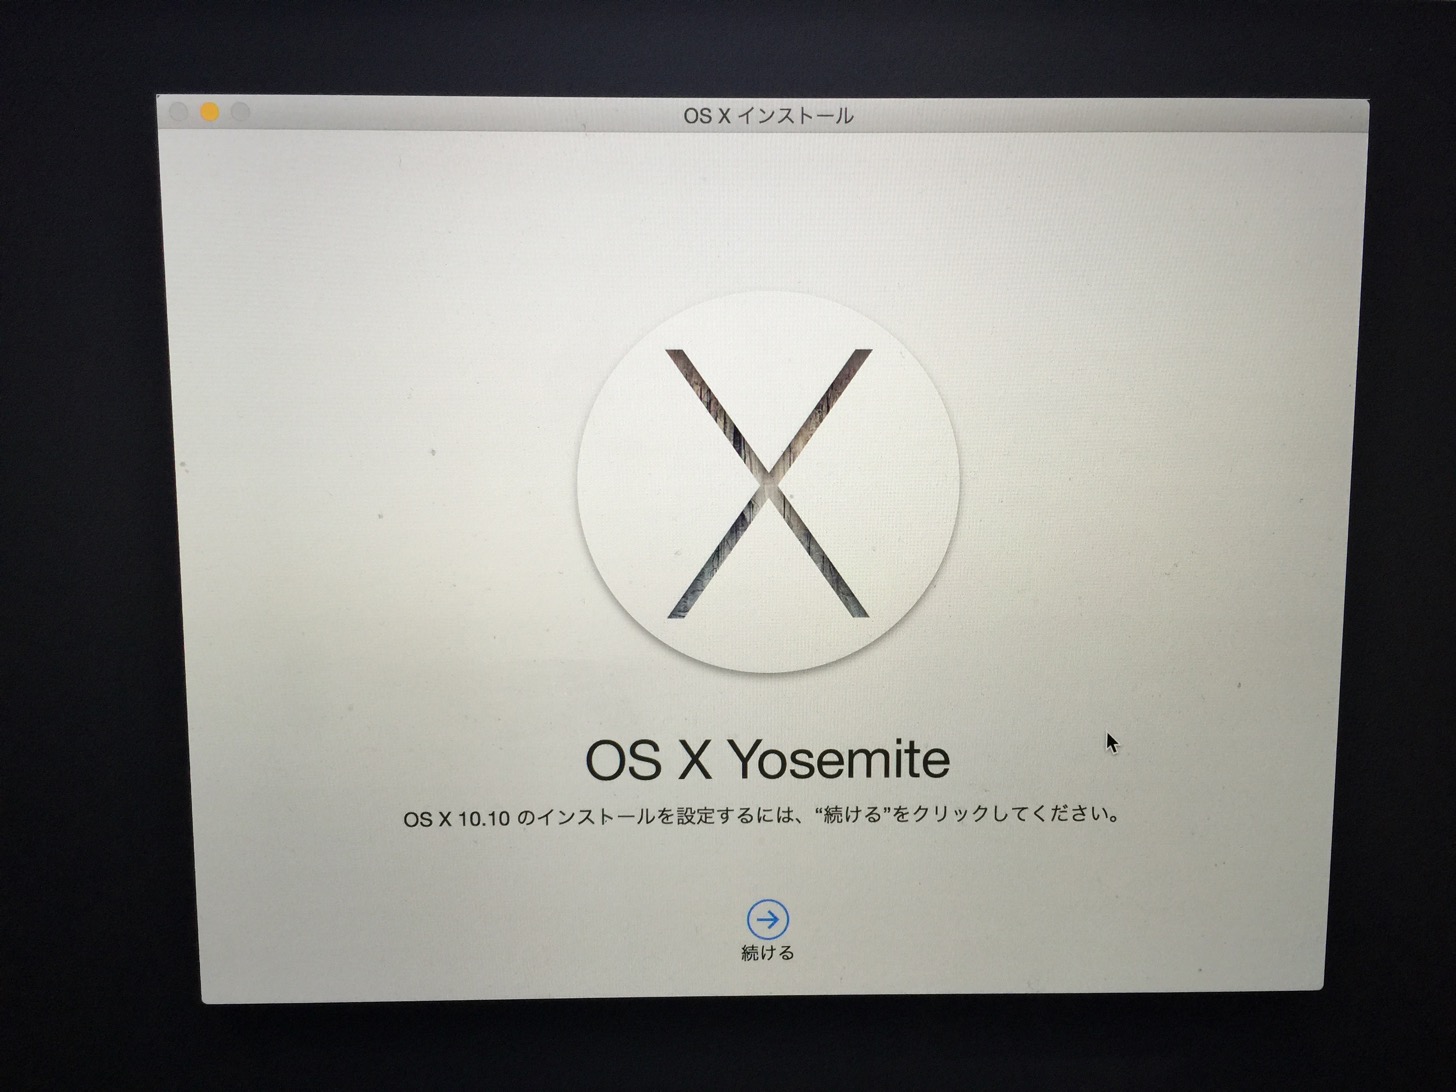 OS X Yosemite OS X 10.10のインストールを設定するには、続けるをクリックしてください。